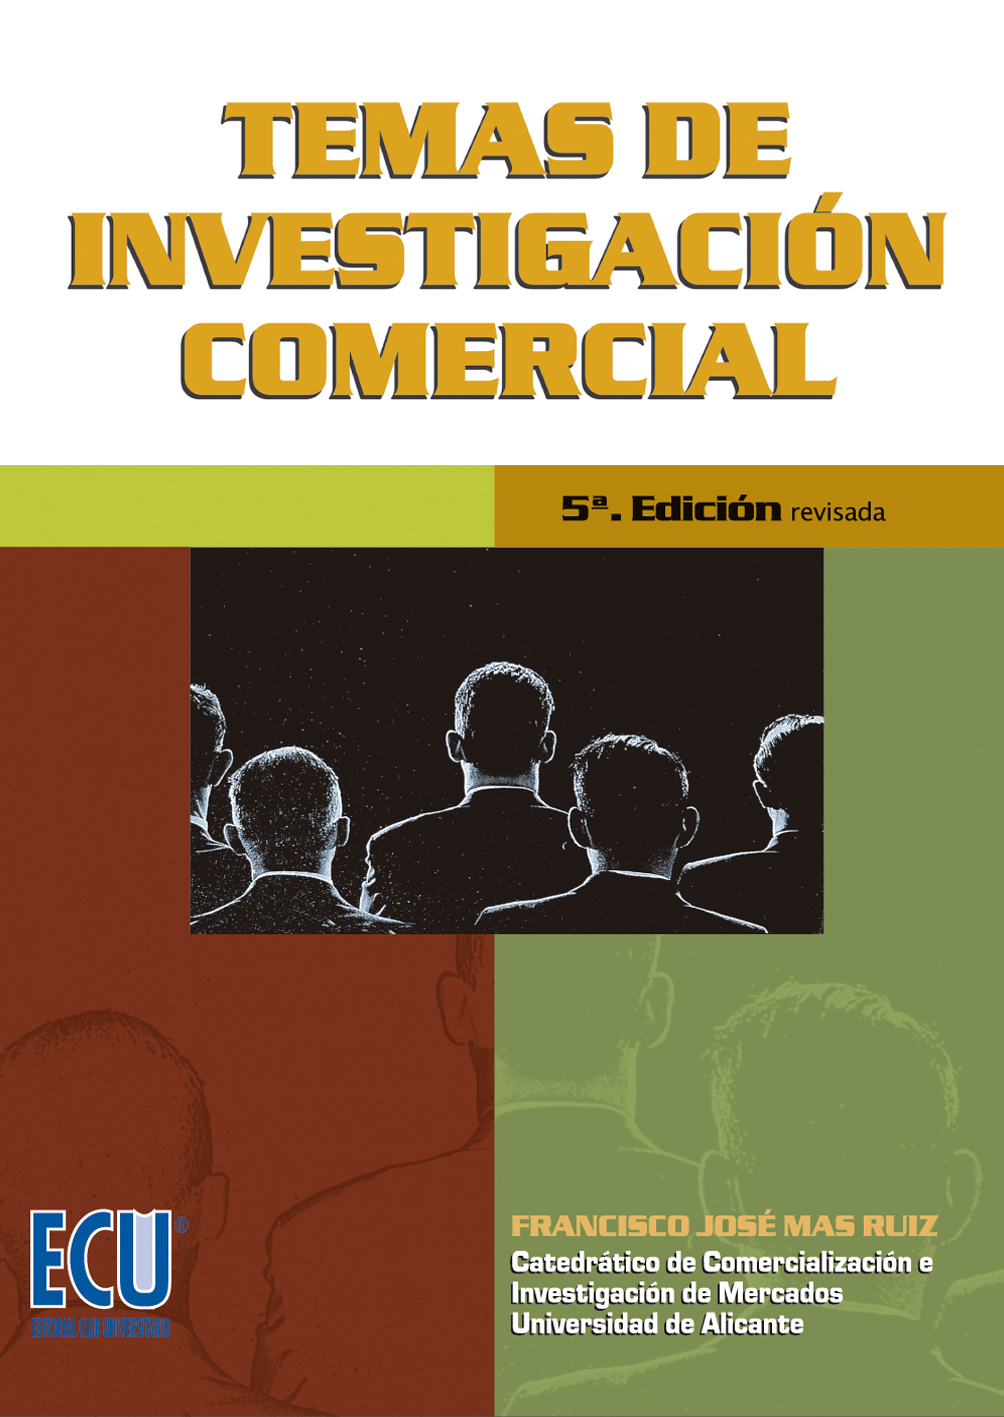 E-book, Temas de Investigación Comercial, Editorial Club Universitario